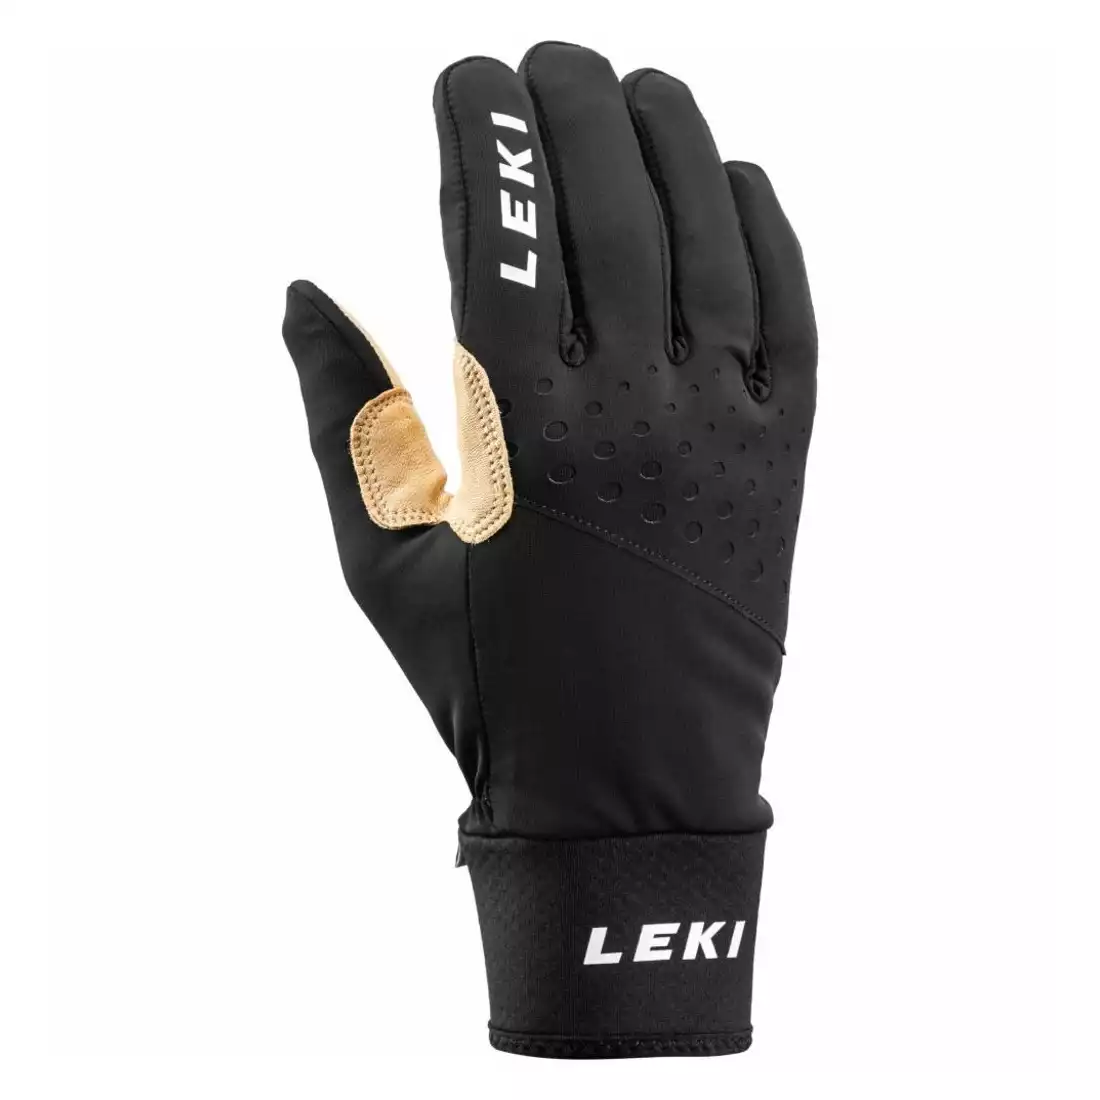 LEKI Nordic Race Premium zimní rukavice, černá a béžová